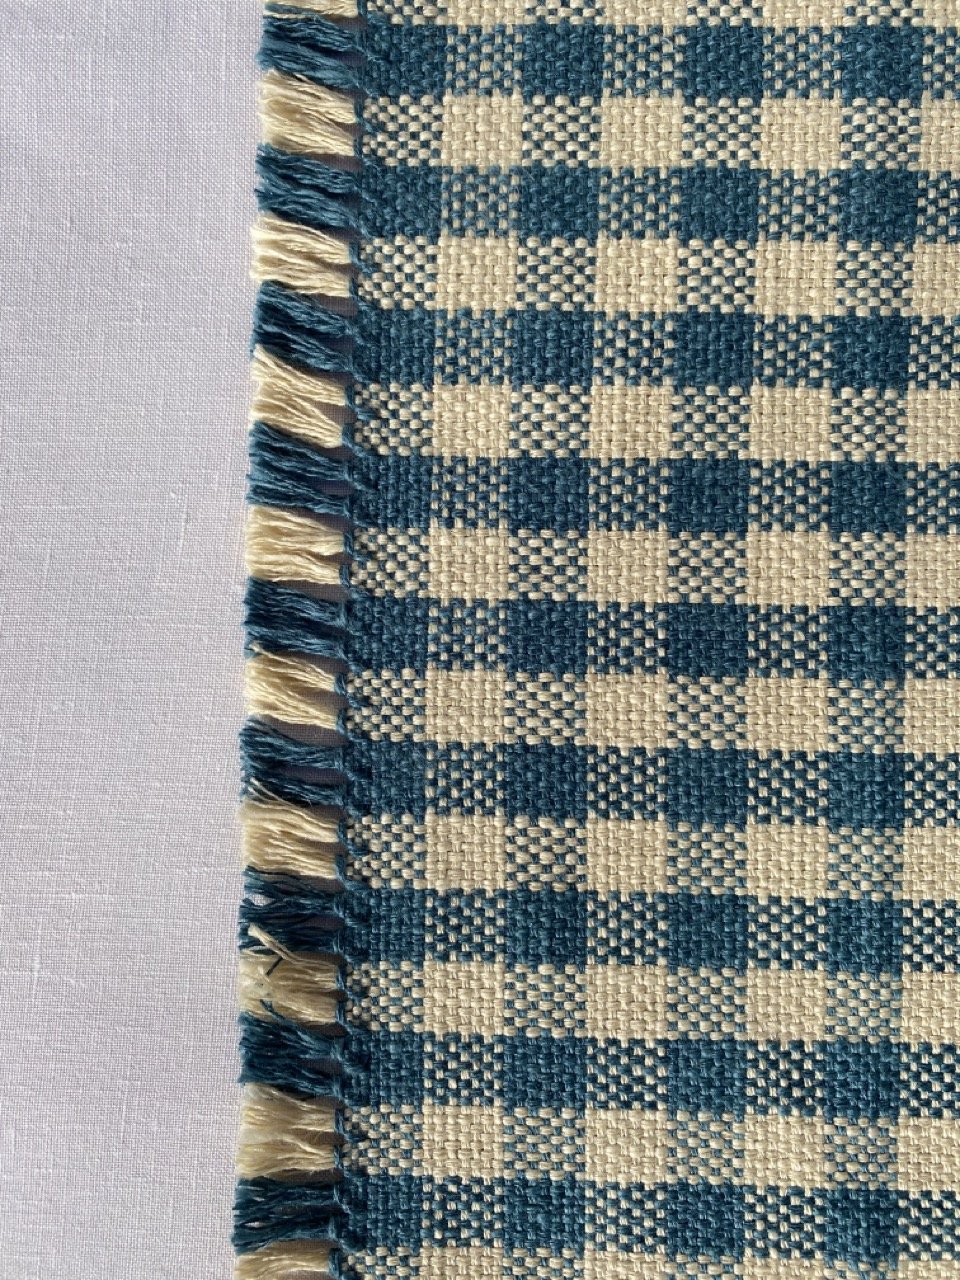 Tovaglietta in lino intrecciato a mano - motivo a quadri blu